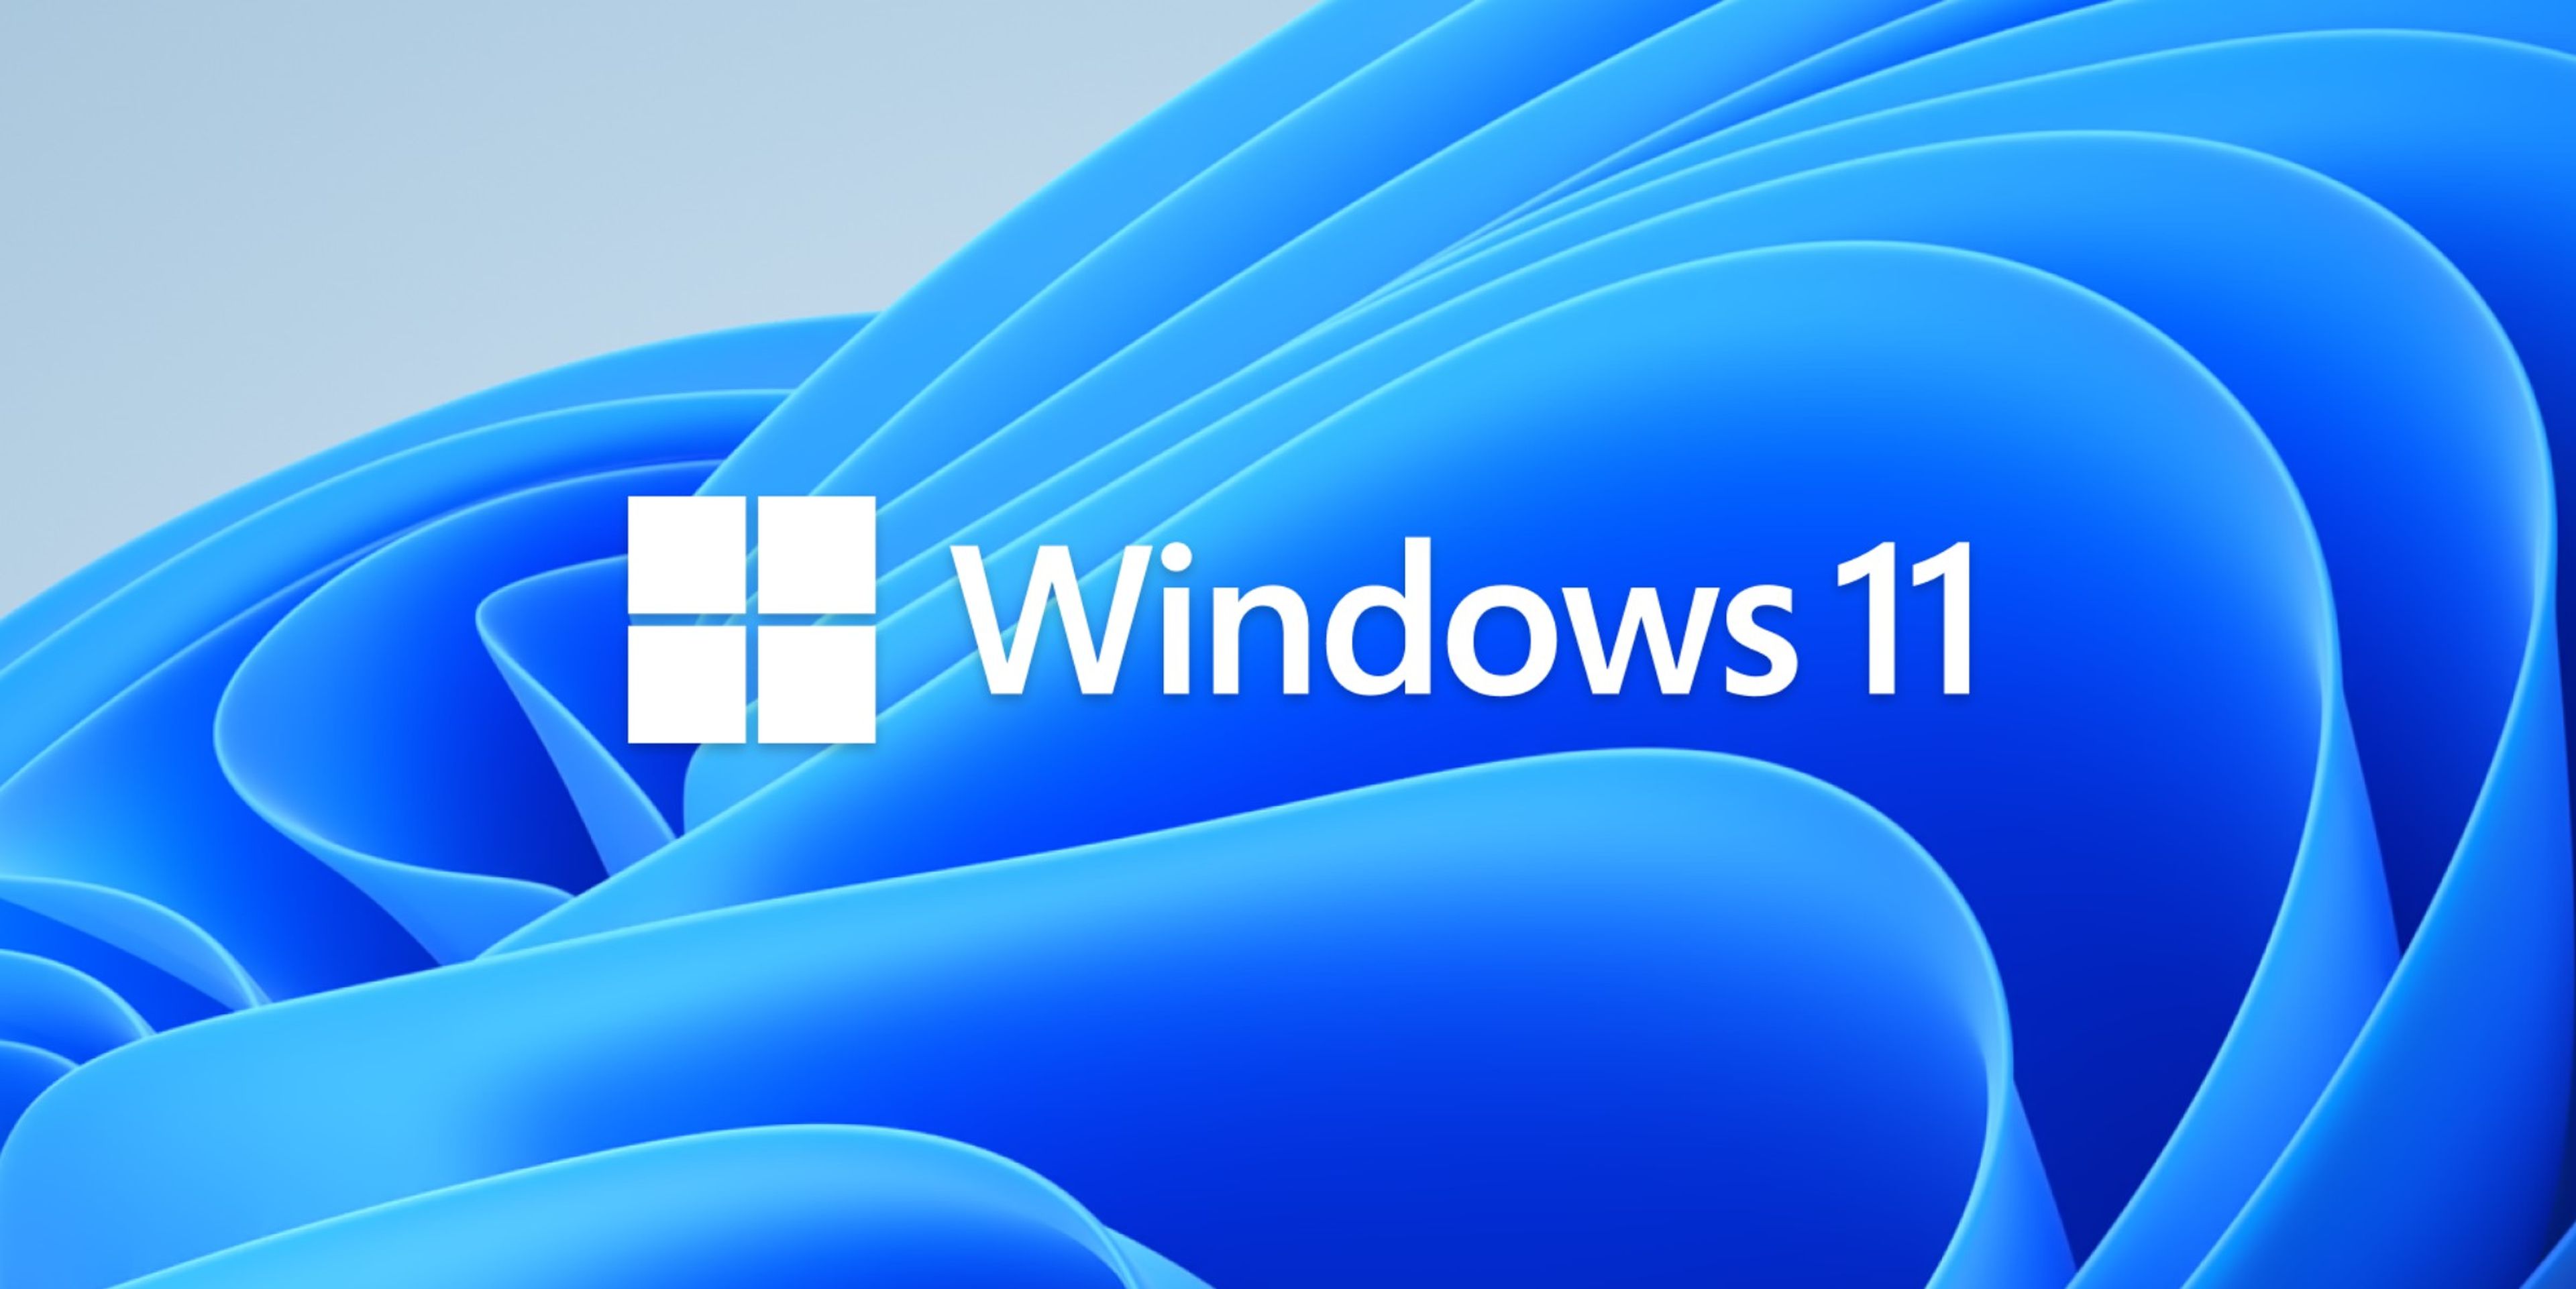 Descubre si tu si ordenador es compatible con Windows 11 con esta herramienta